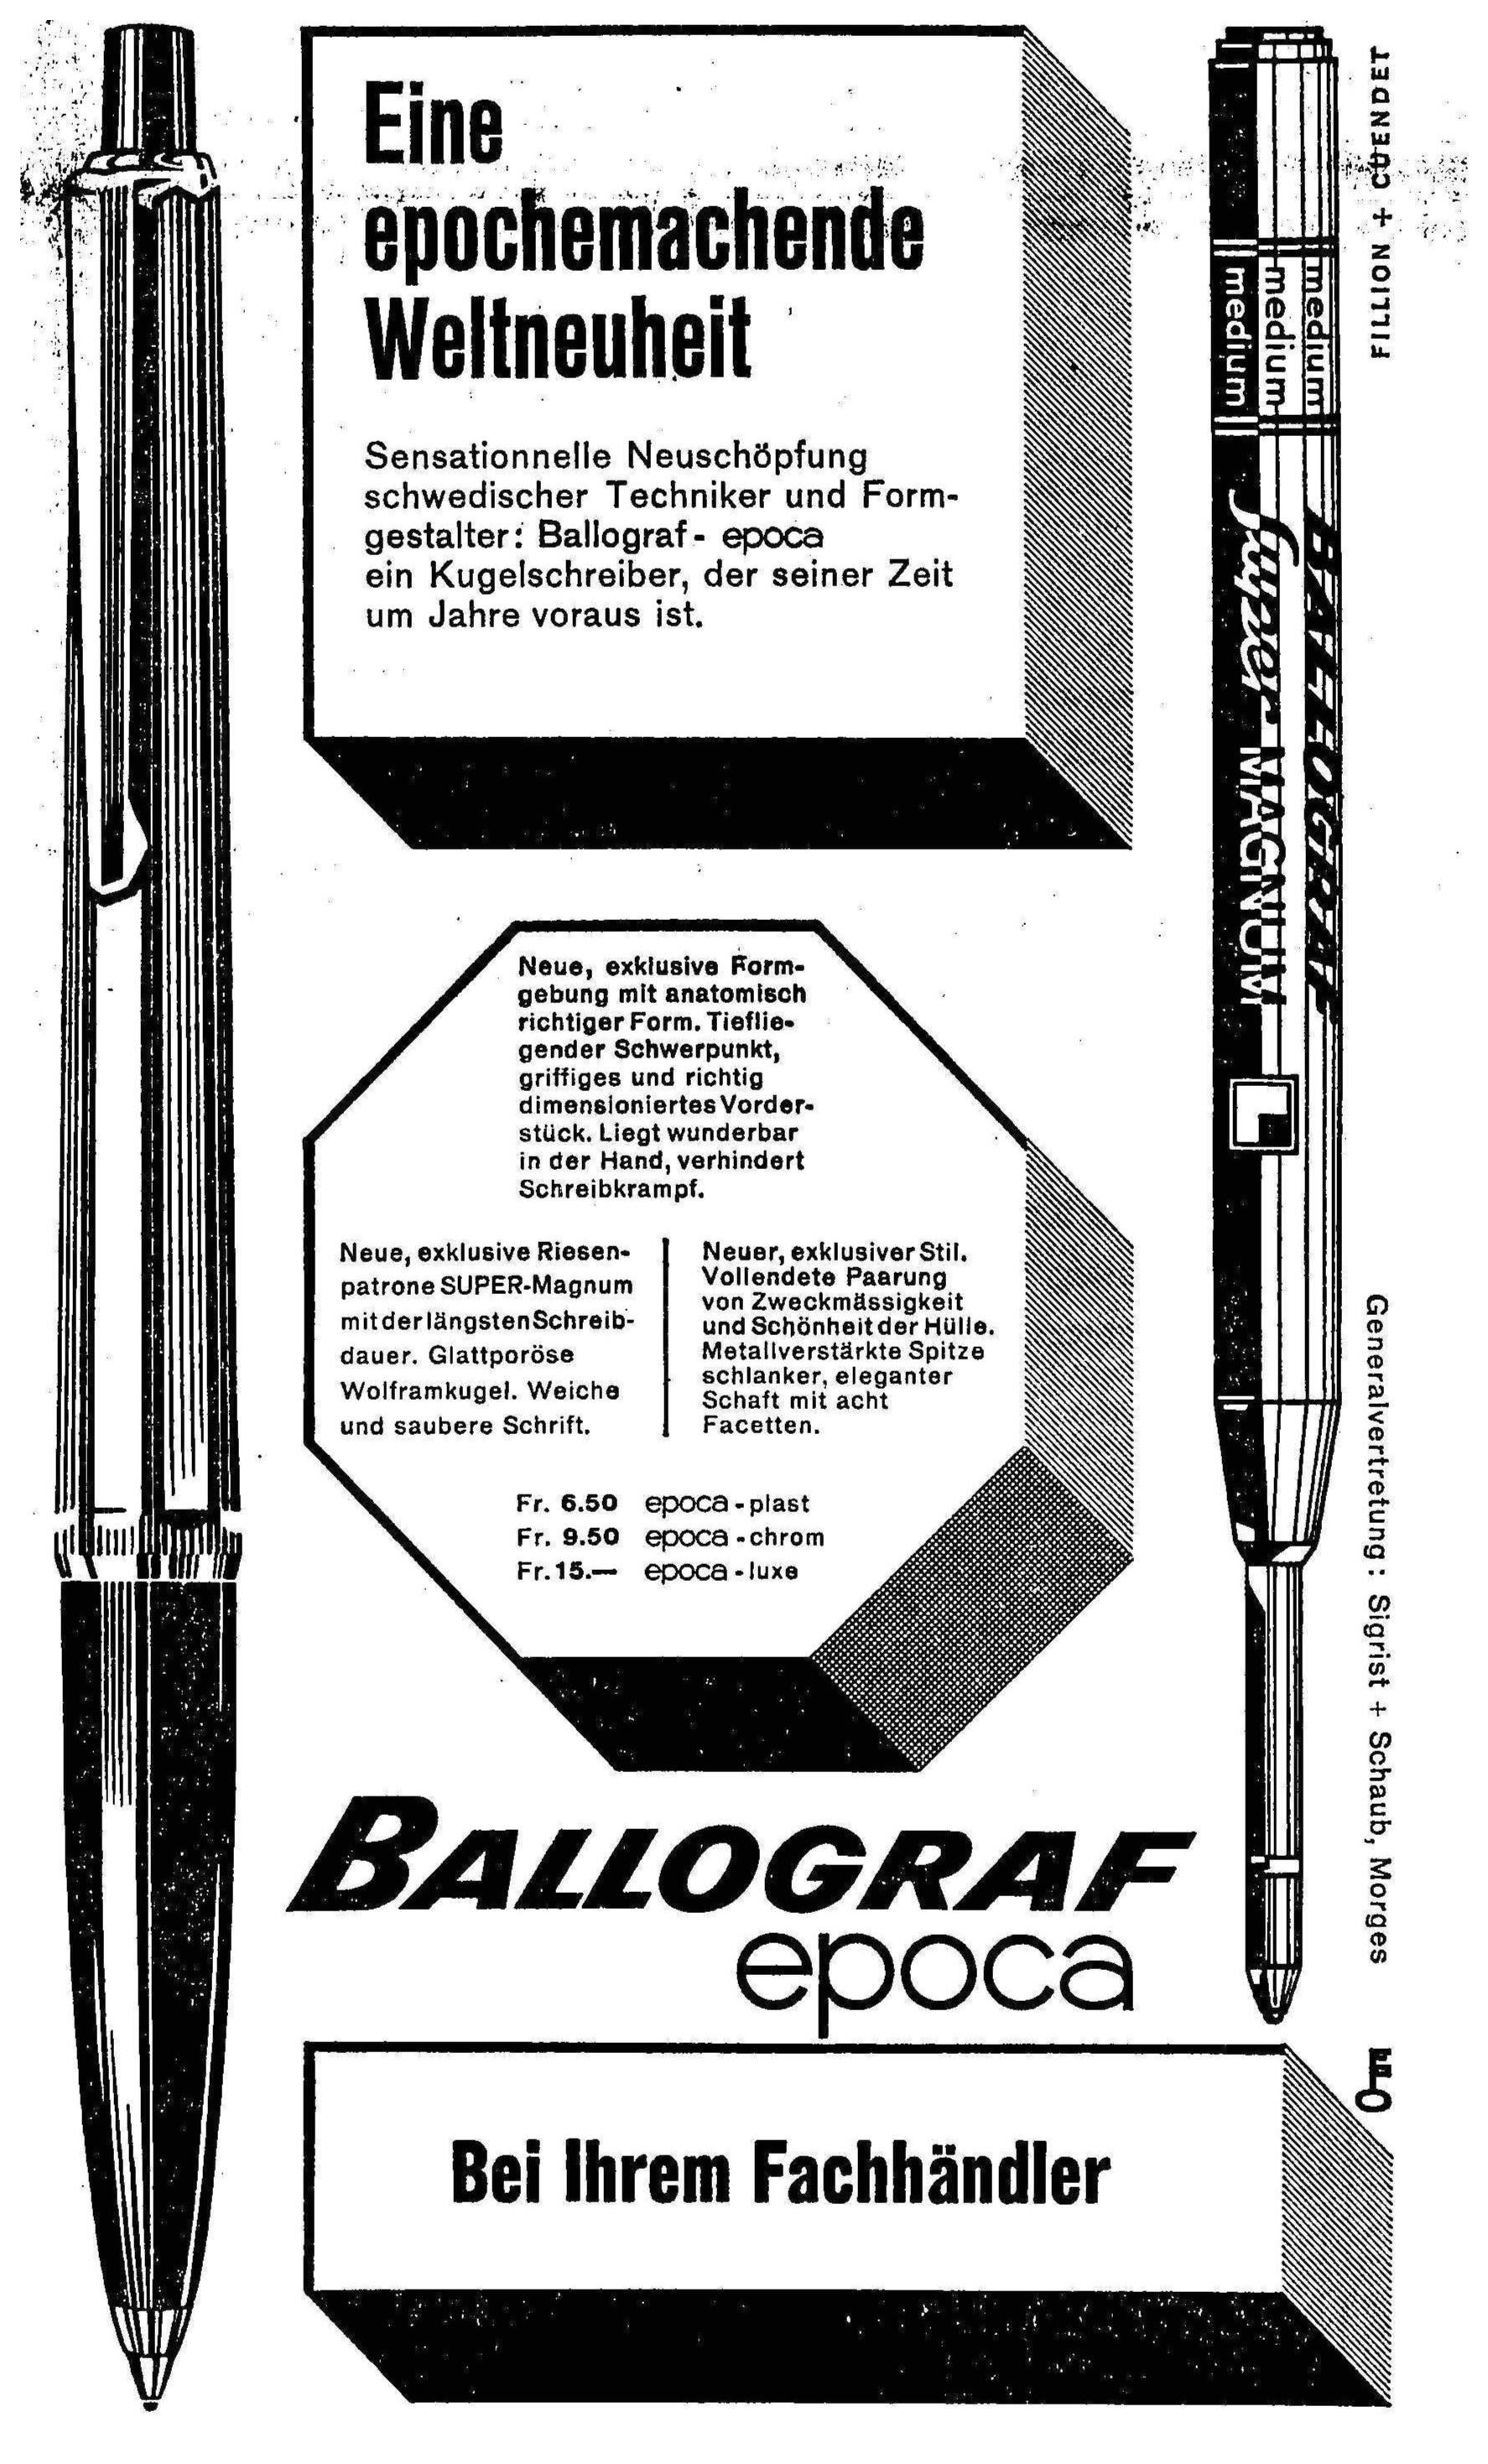 Ballograph 1961 0.jpg